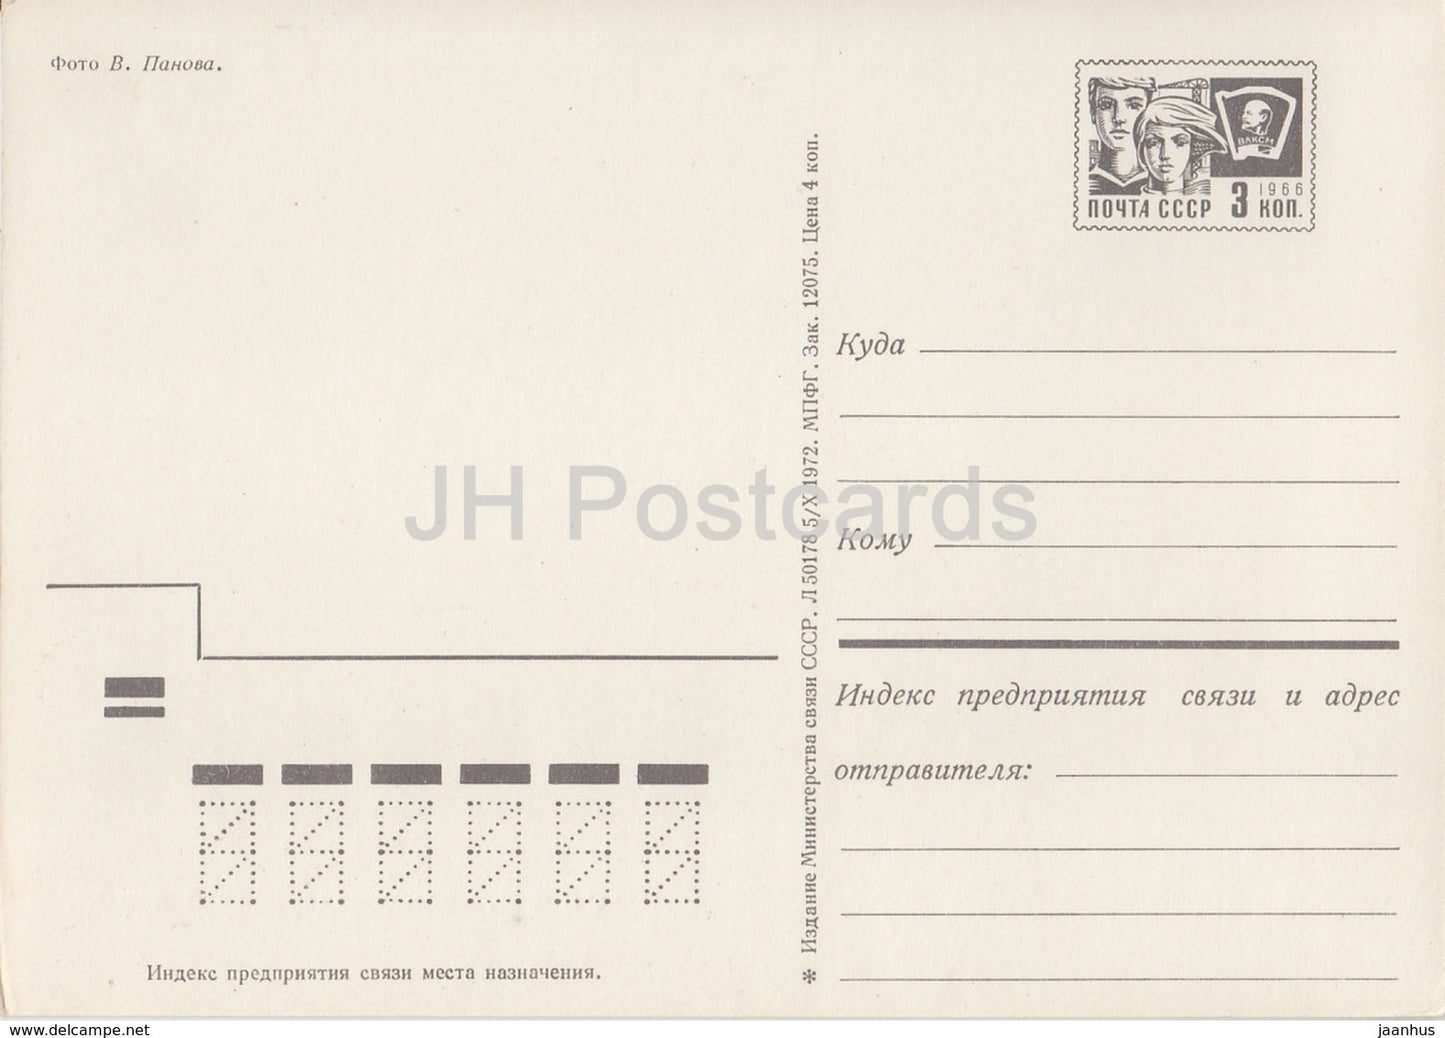 Sochi - Railway Station - postal stationery - 1972 - Russia USSR - unused